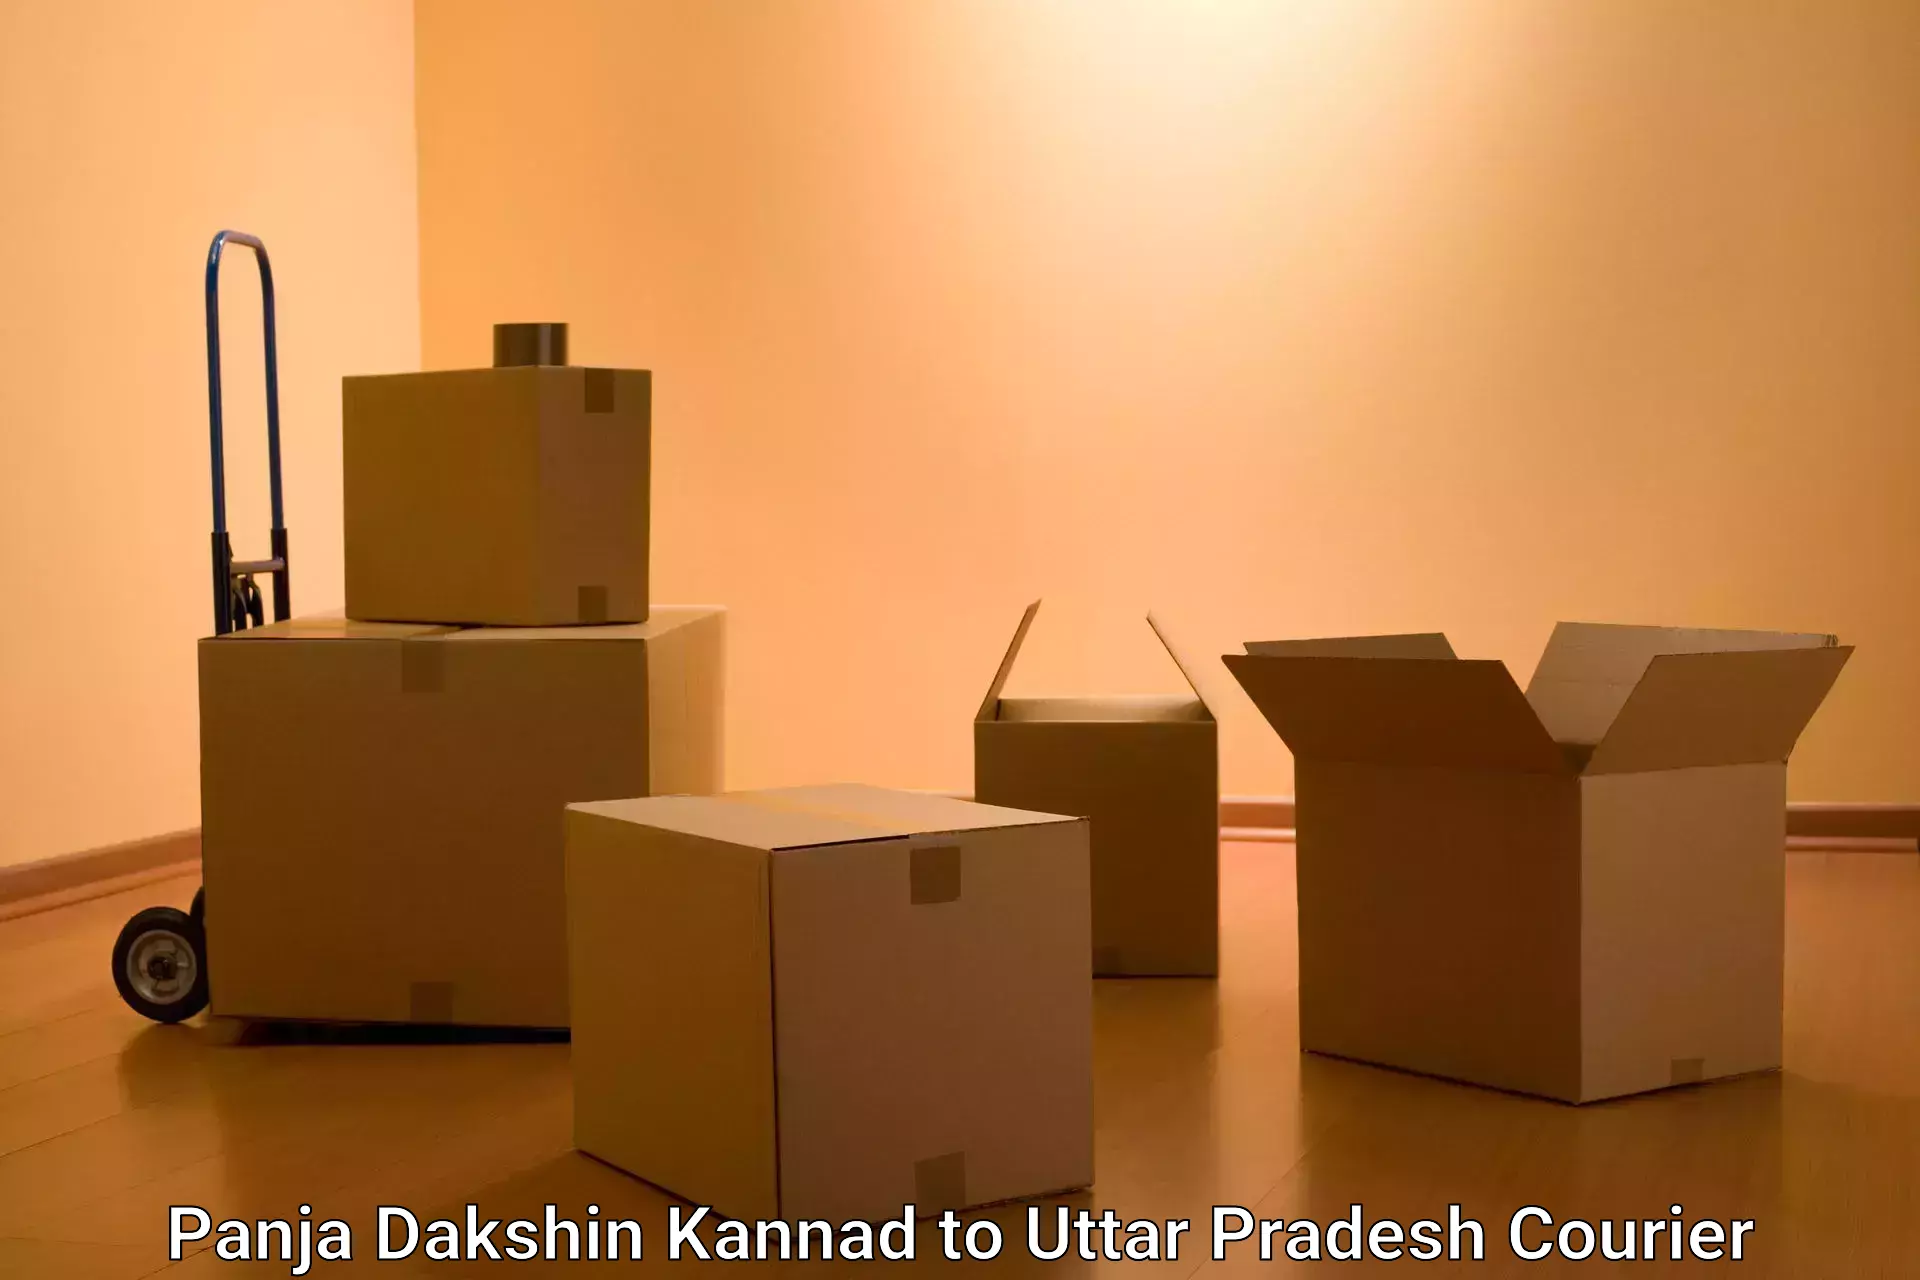 High-capacity parcel service Panja Dakshin Kannad to Dariyabad